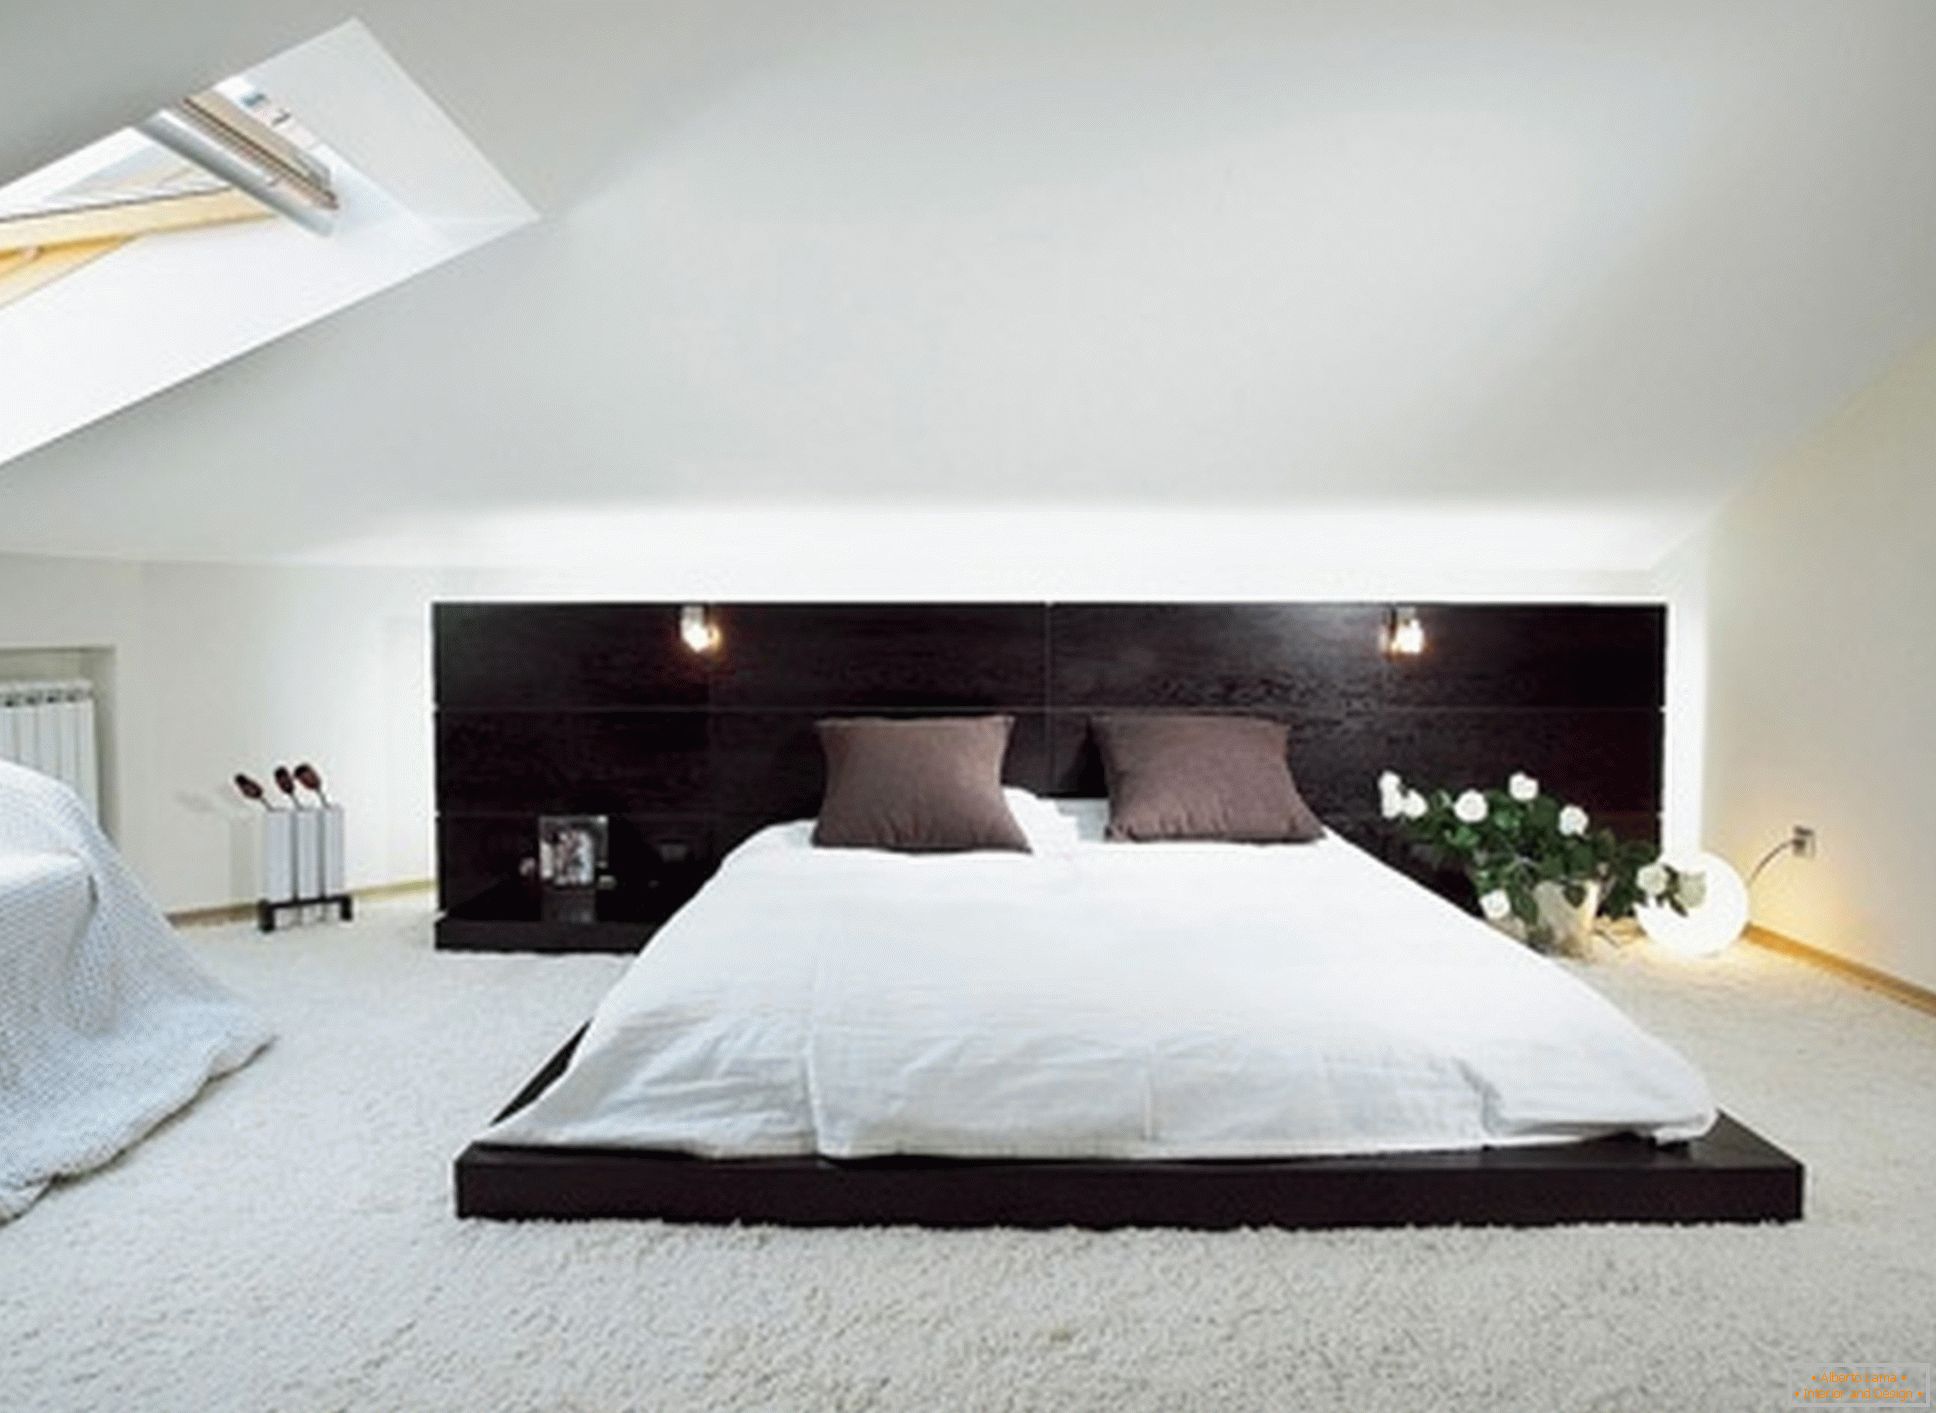 Lussuosa camera da letto nello stile minimalista - un esempio di un design di successo di una piccola stanza al piano attico.